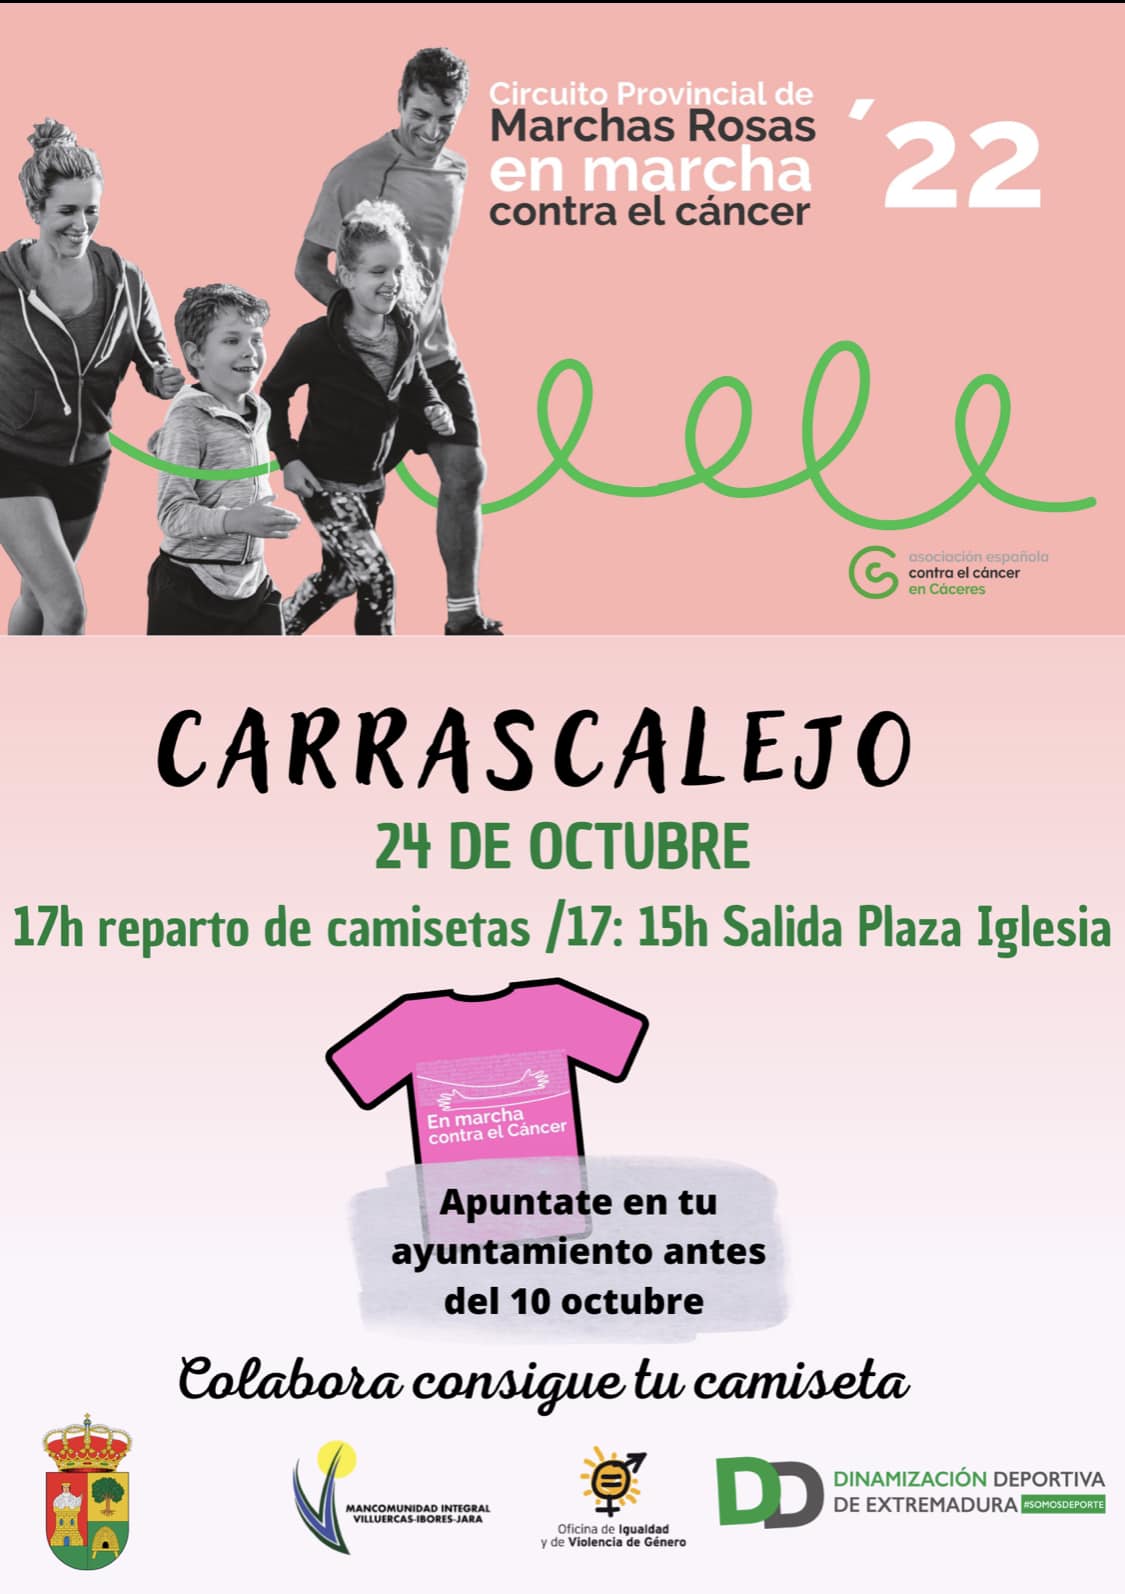 Marcha rosa (2022) - Carrascalejo (Cáceres)